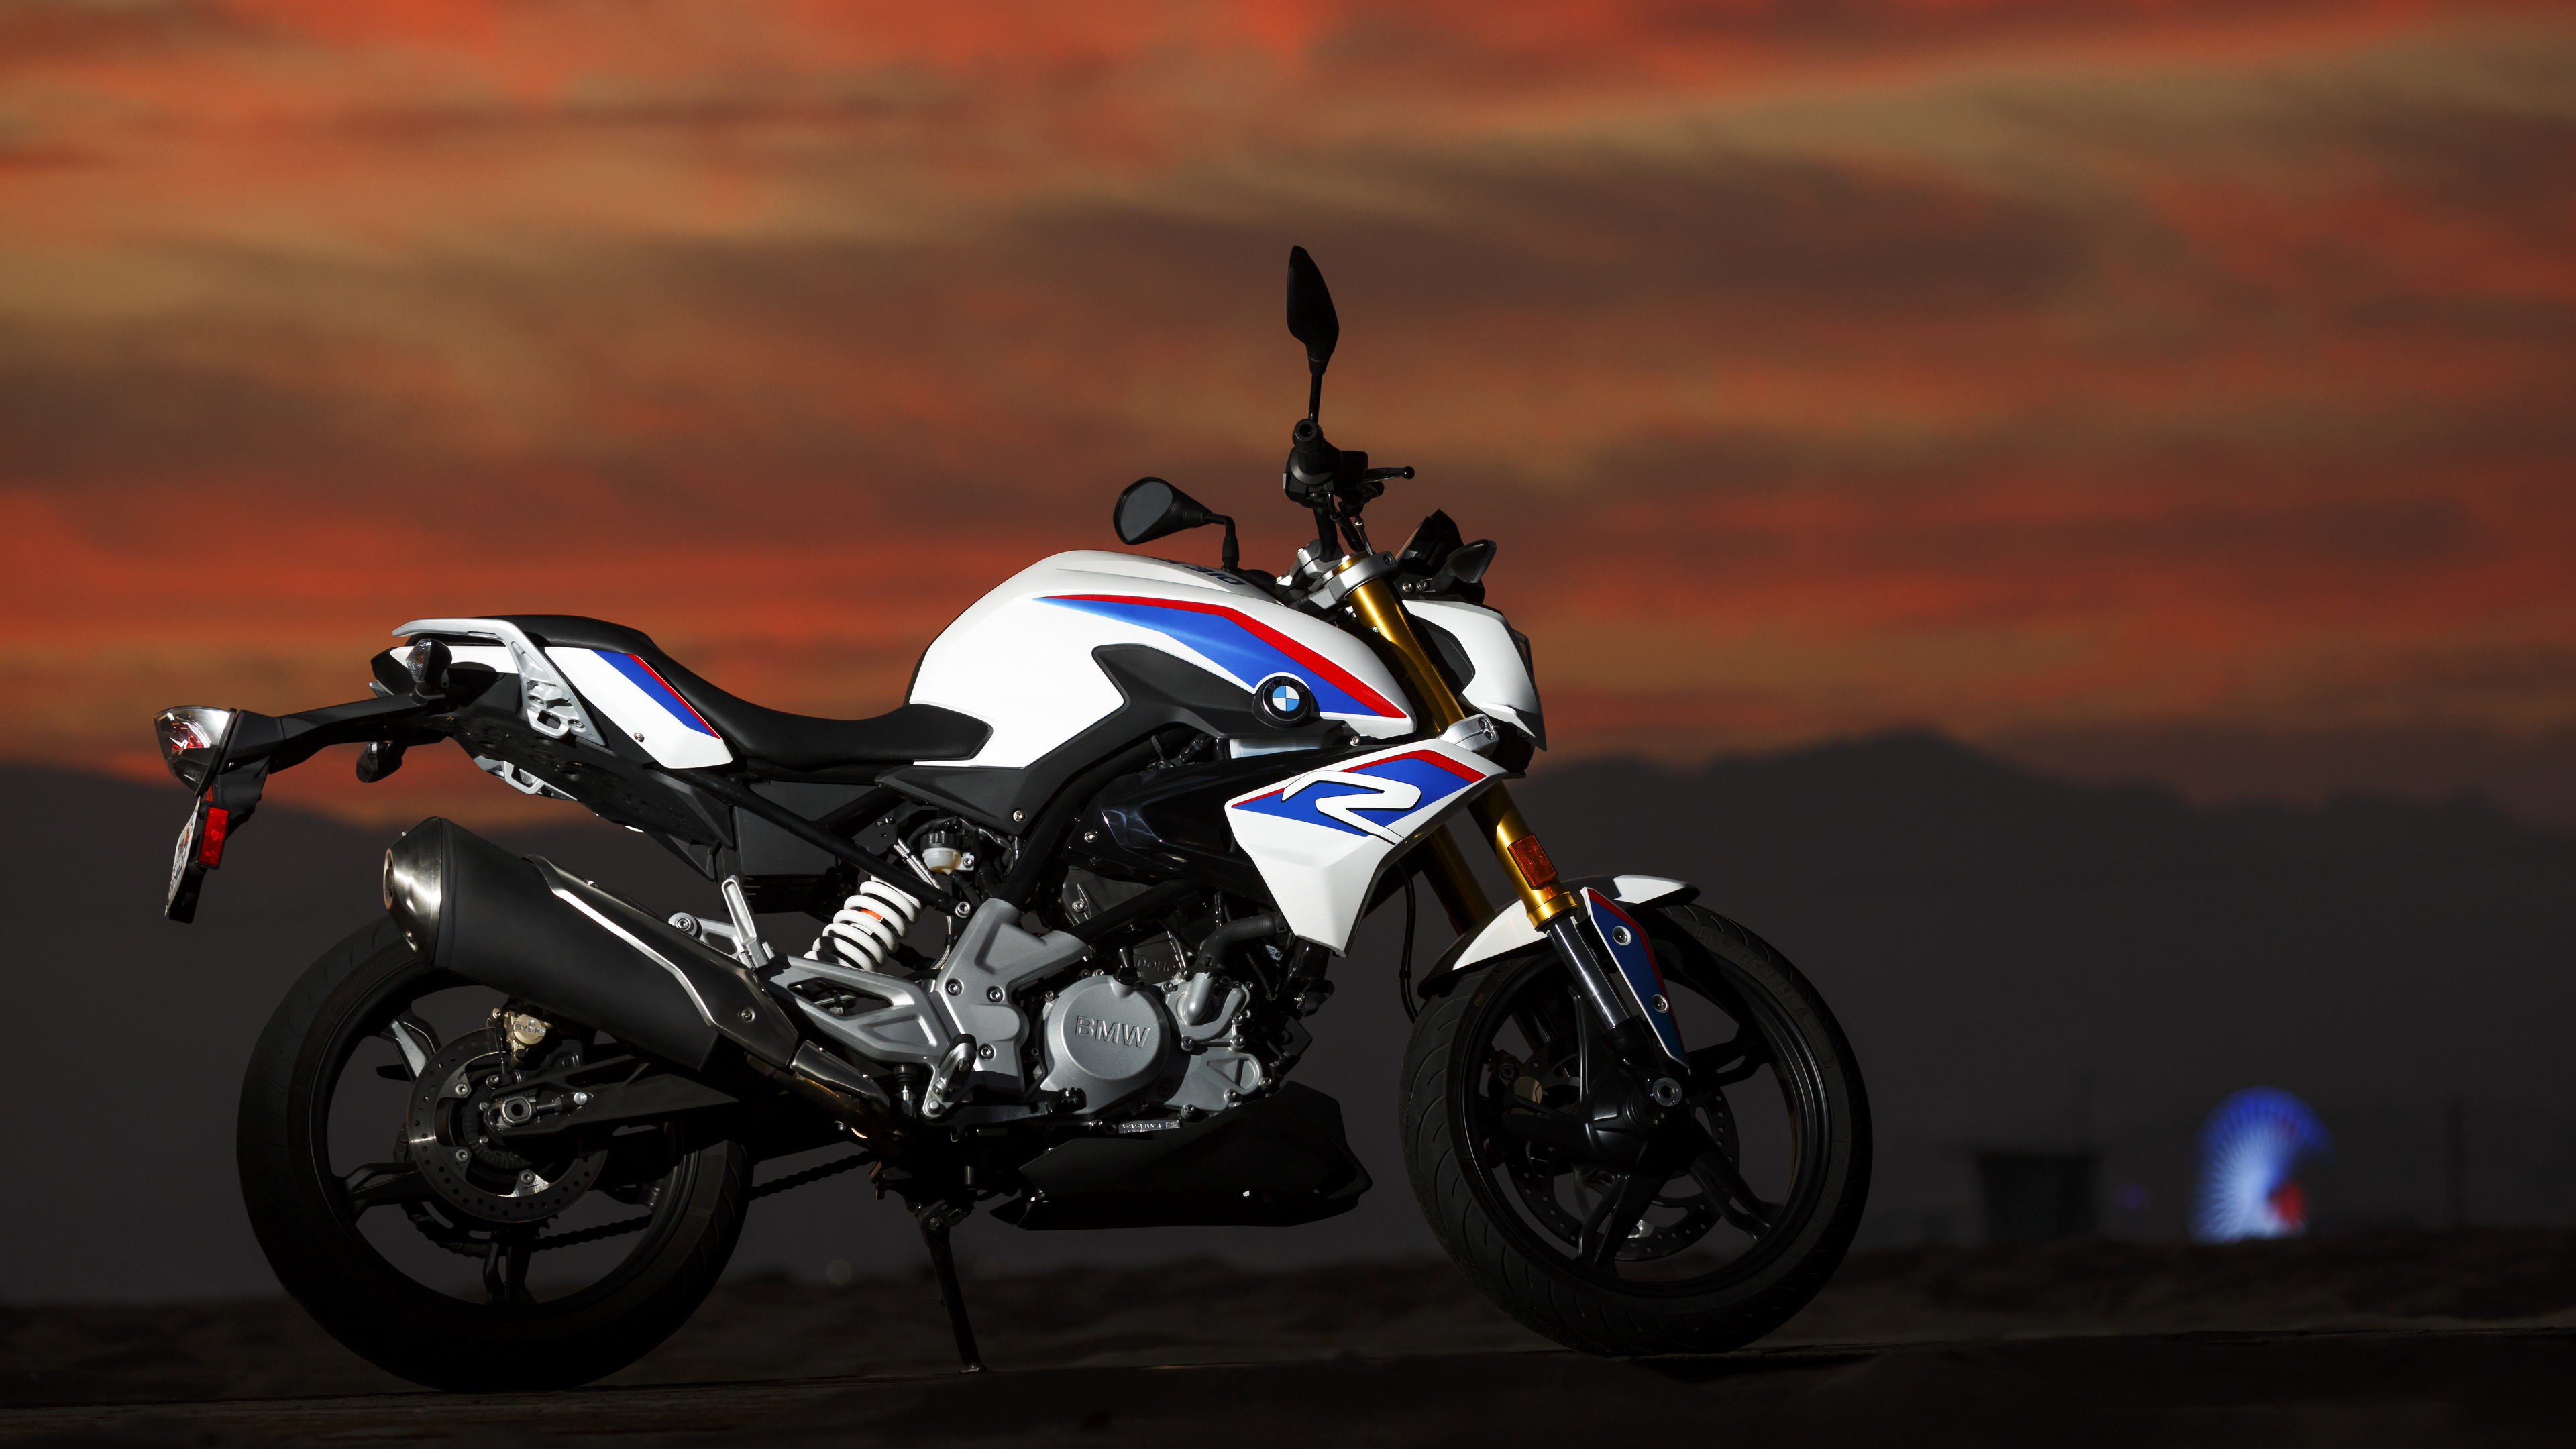 BMW G 310 R, Thrilling ride, Adventure bike, Stunning visuals, 3840x2160 4K Desktop